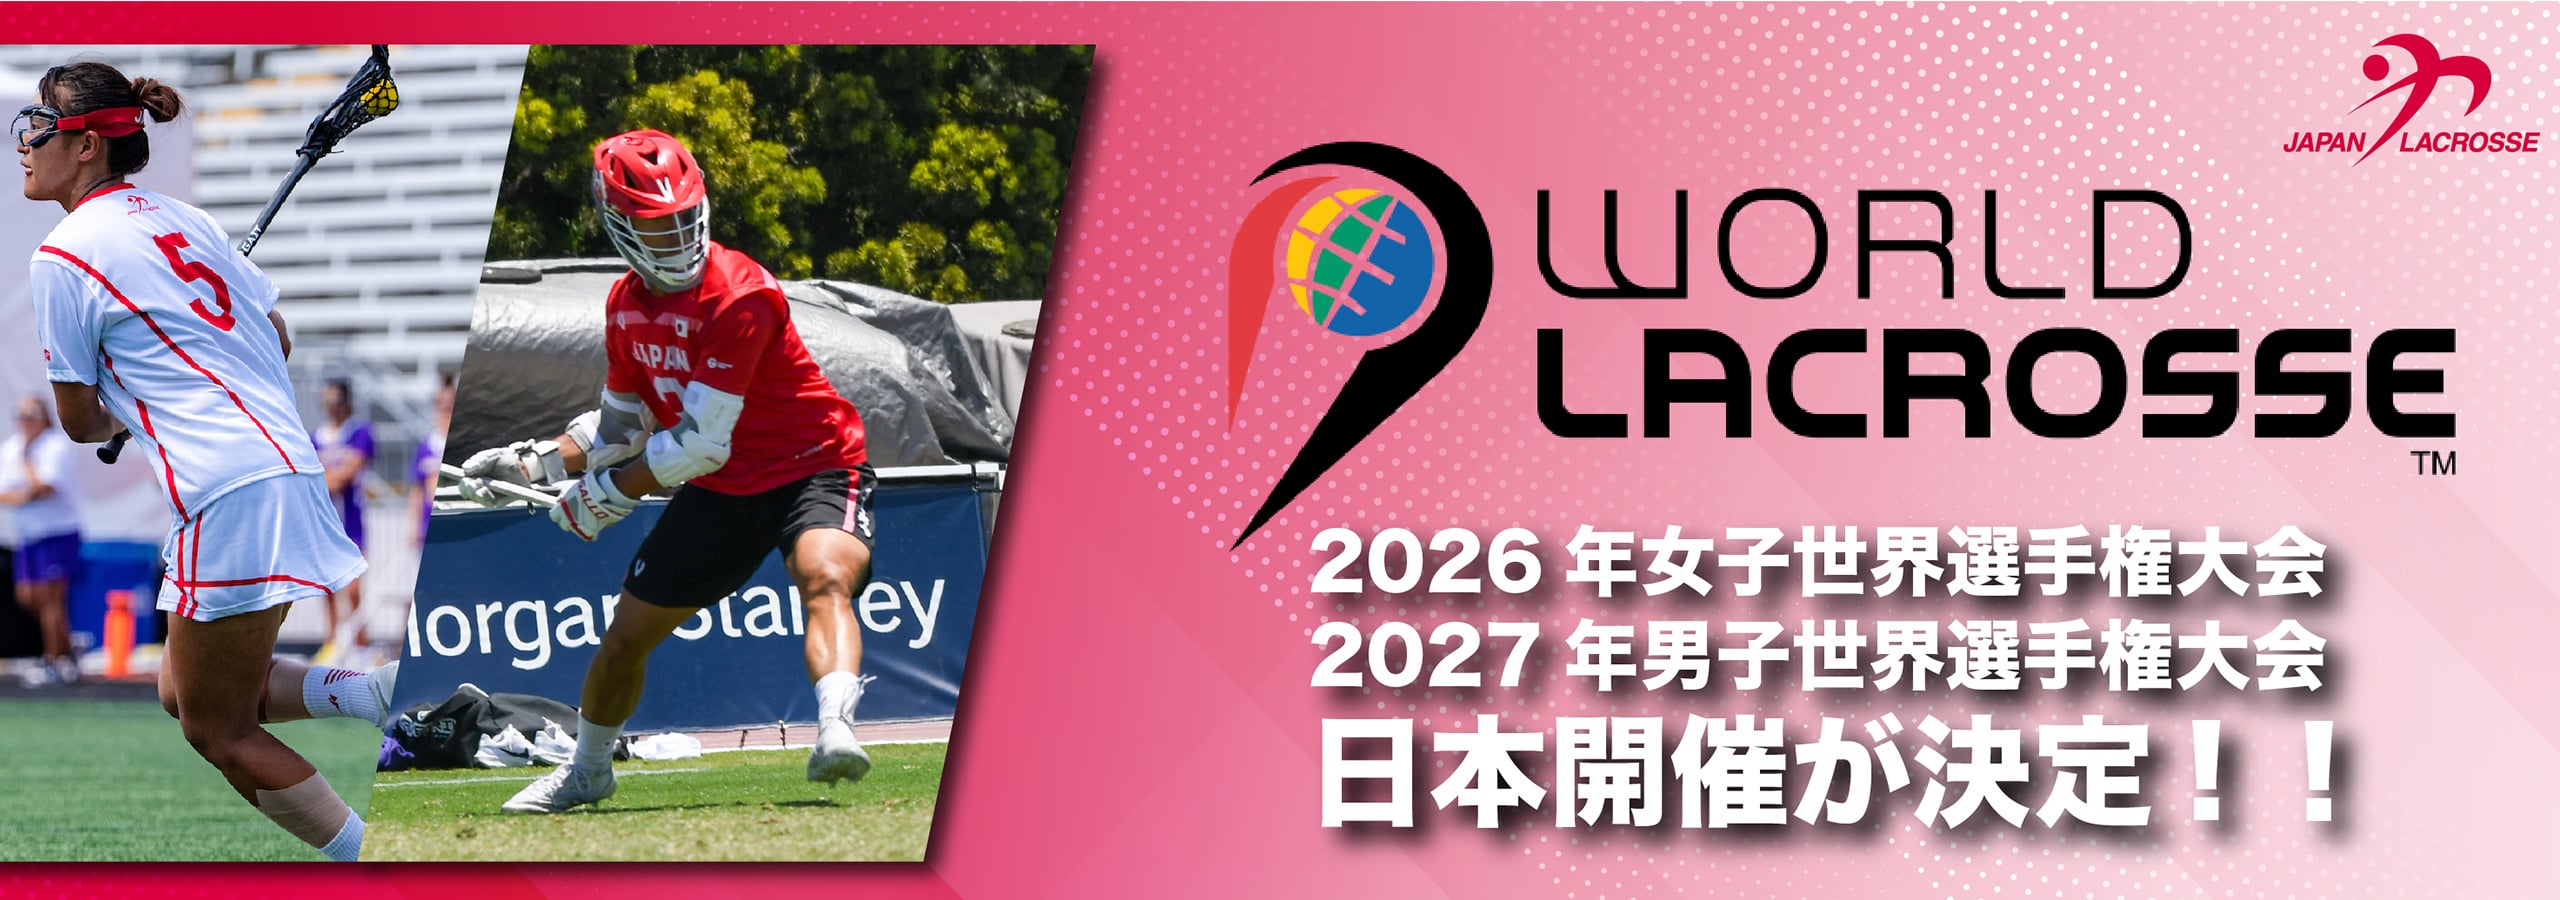 2026年女子世界選手権大会、2027年男子世界選手権大会日本開催が決定